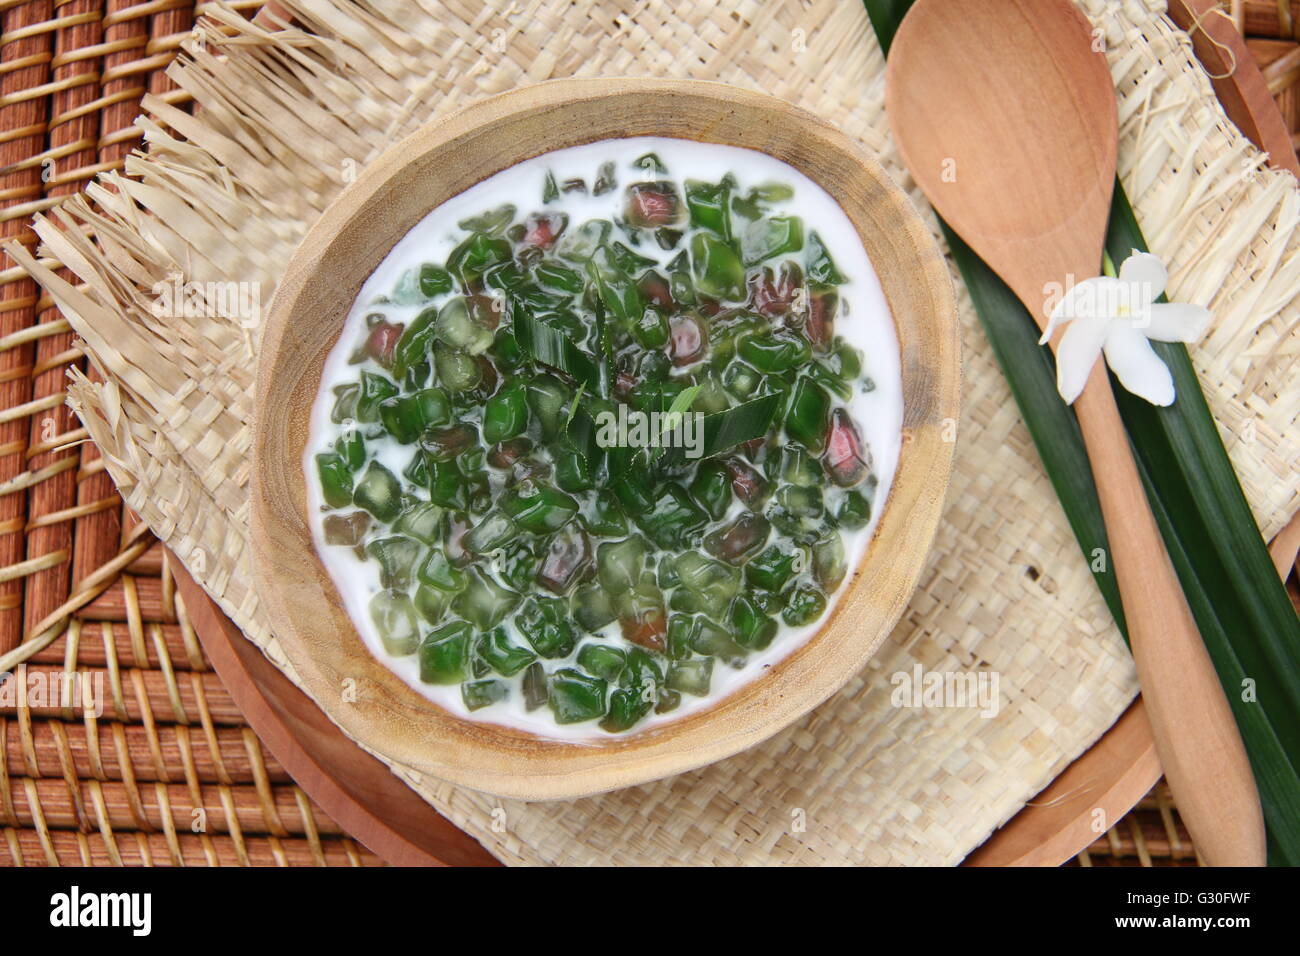 Porridge doux de vert et rose cubes de tapioca au lait de coco, sur un bol en bois fabriqué à partir de grains entiers de morceau de bois de teck. Banque D'Images